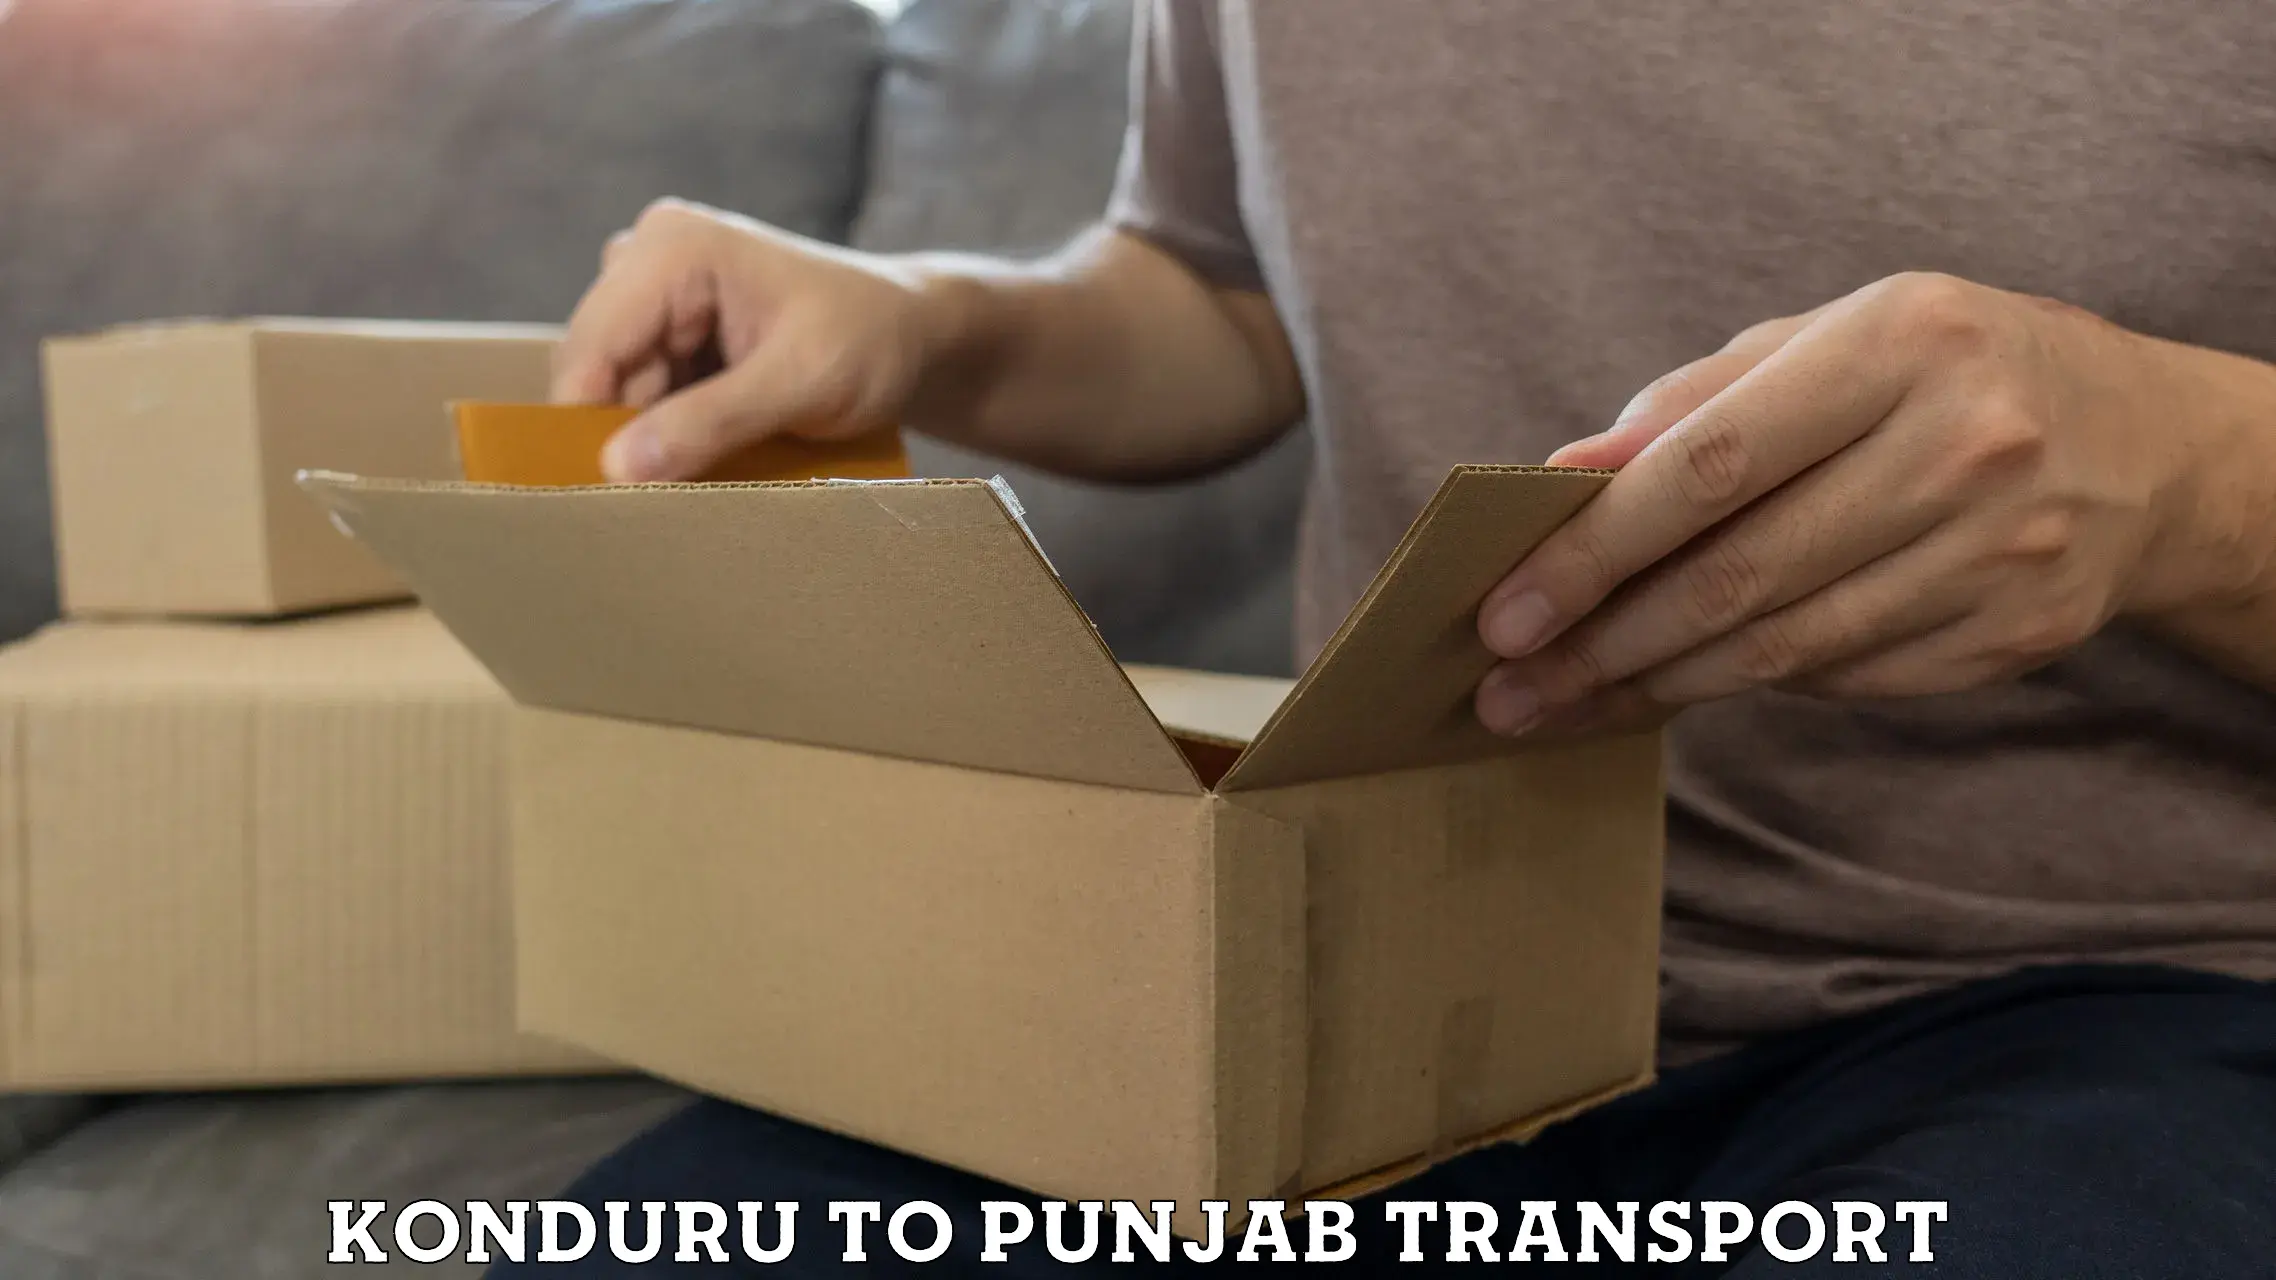 Sending bike to another city Konduru to Punjab